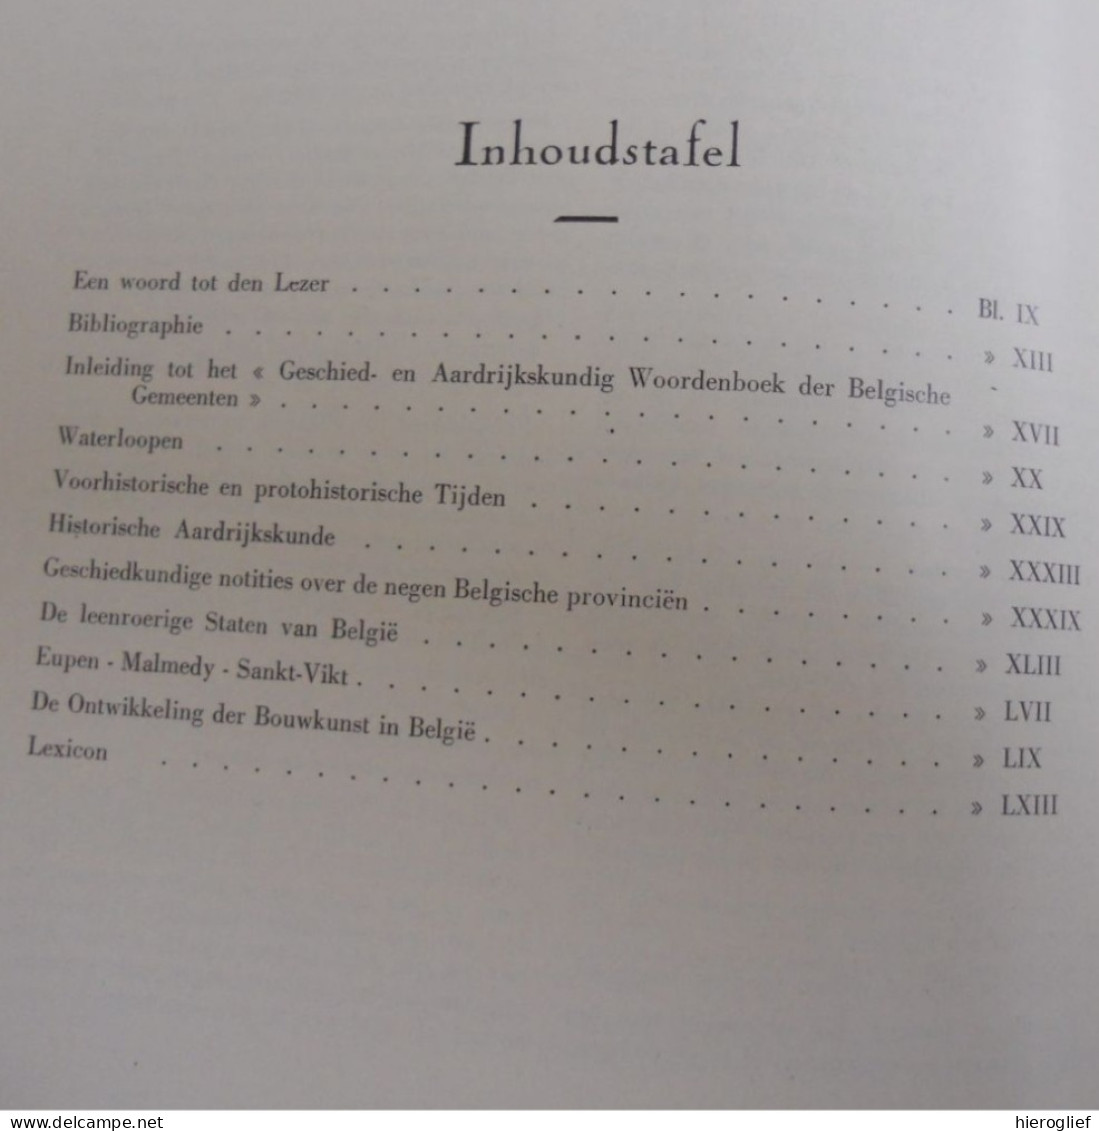 Geschiedkundig En Aardrijkskundig Woordenboek Der Belgische Gemeenten 1 & 2 - Eug. De Seyn ° Roeselare + Etterbeek - History